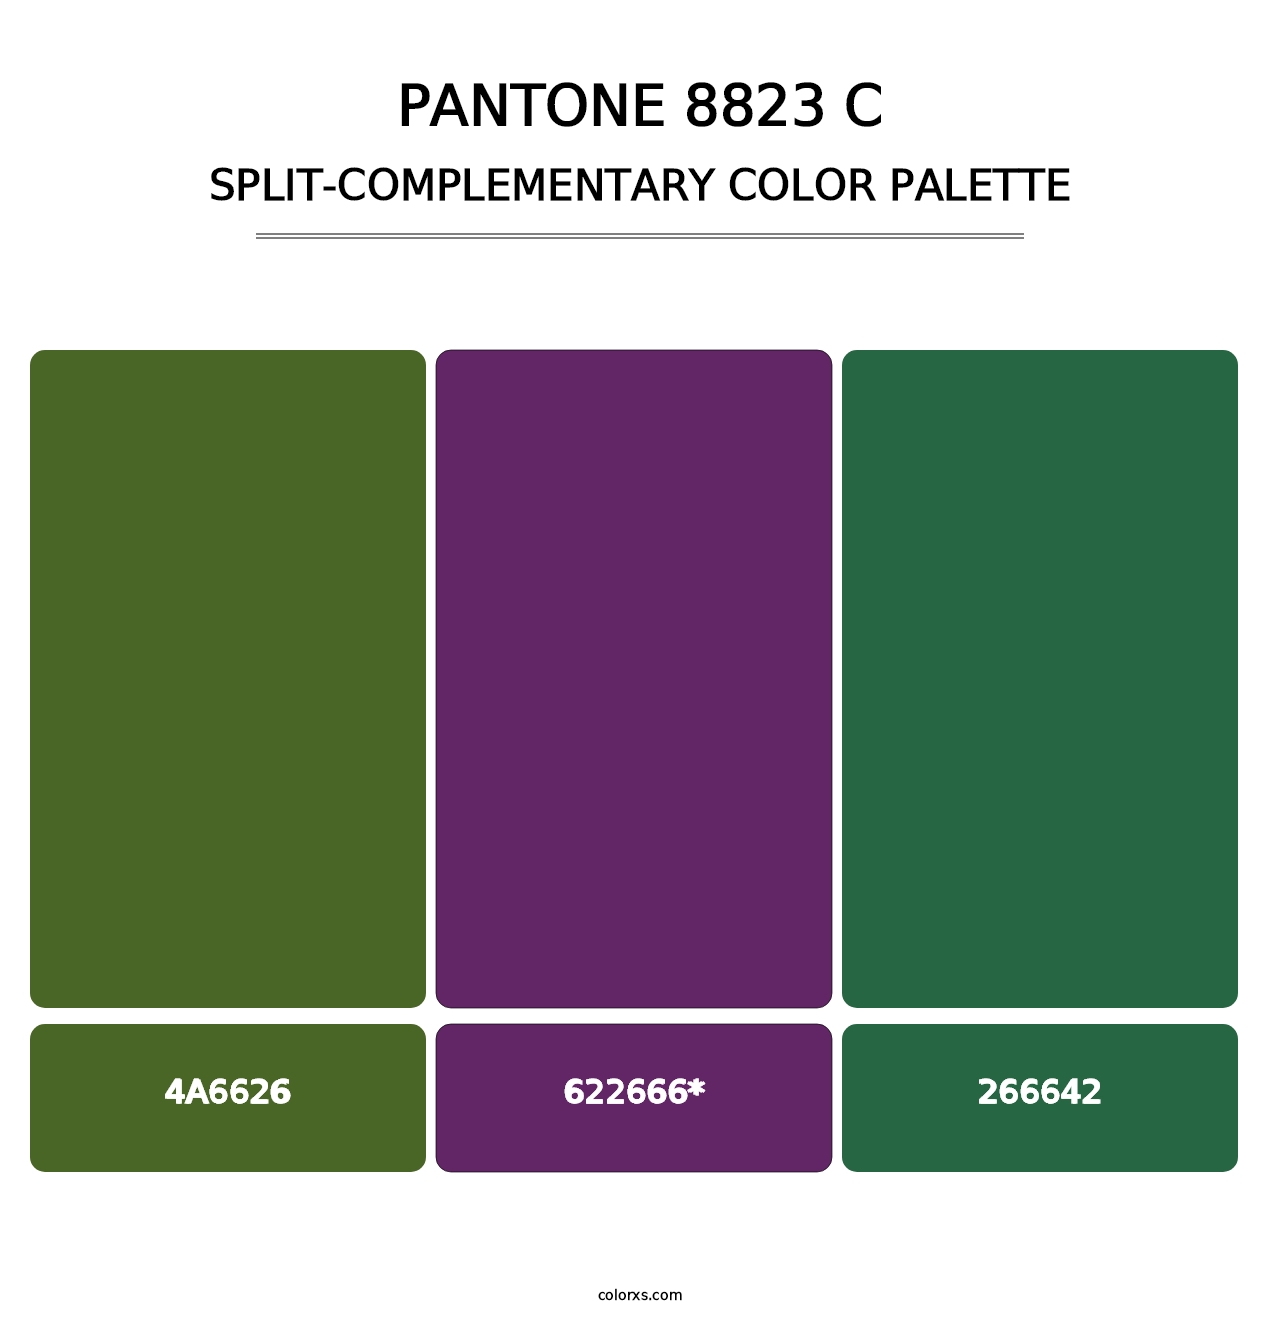 PANTONE 8823 C - Split-Complementary Color Palette